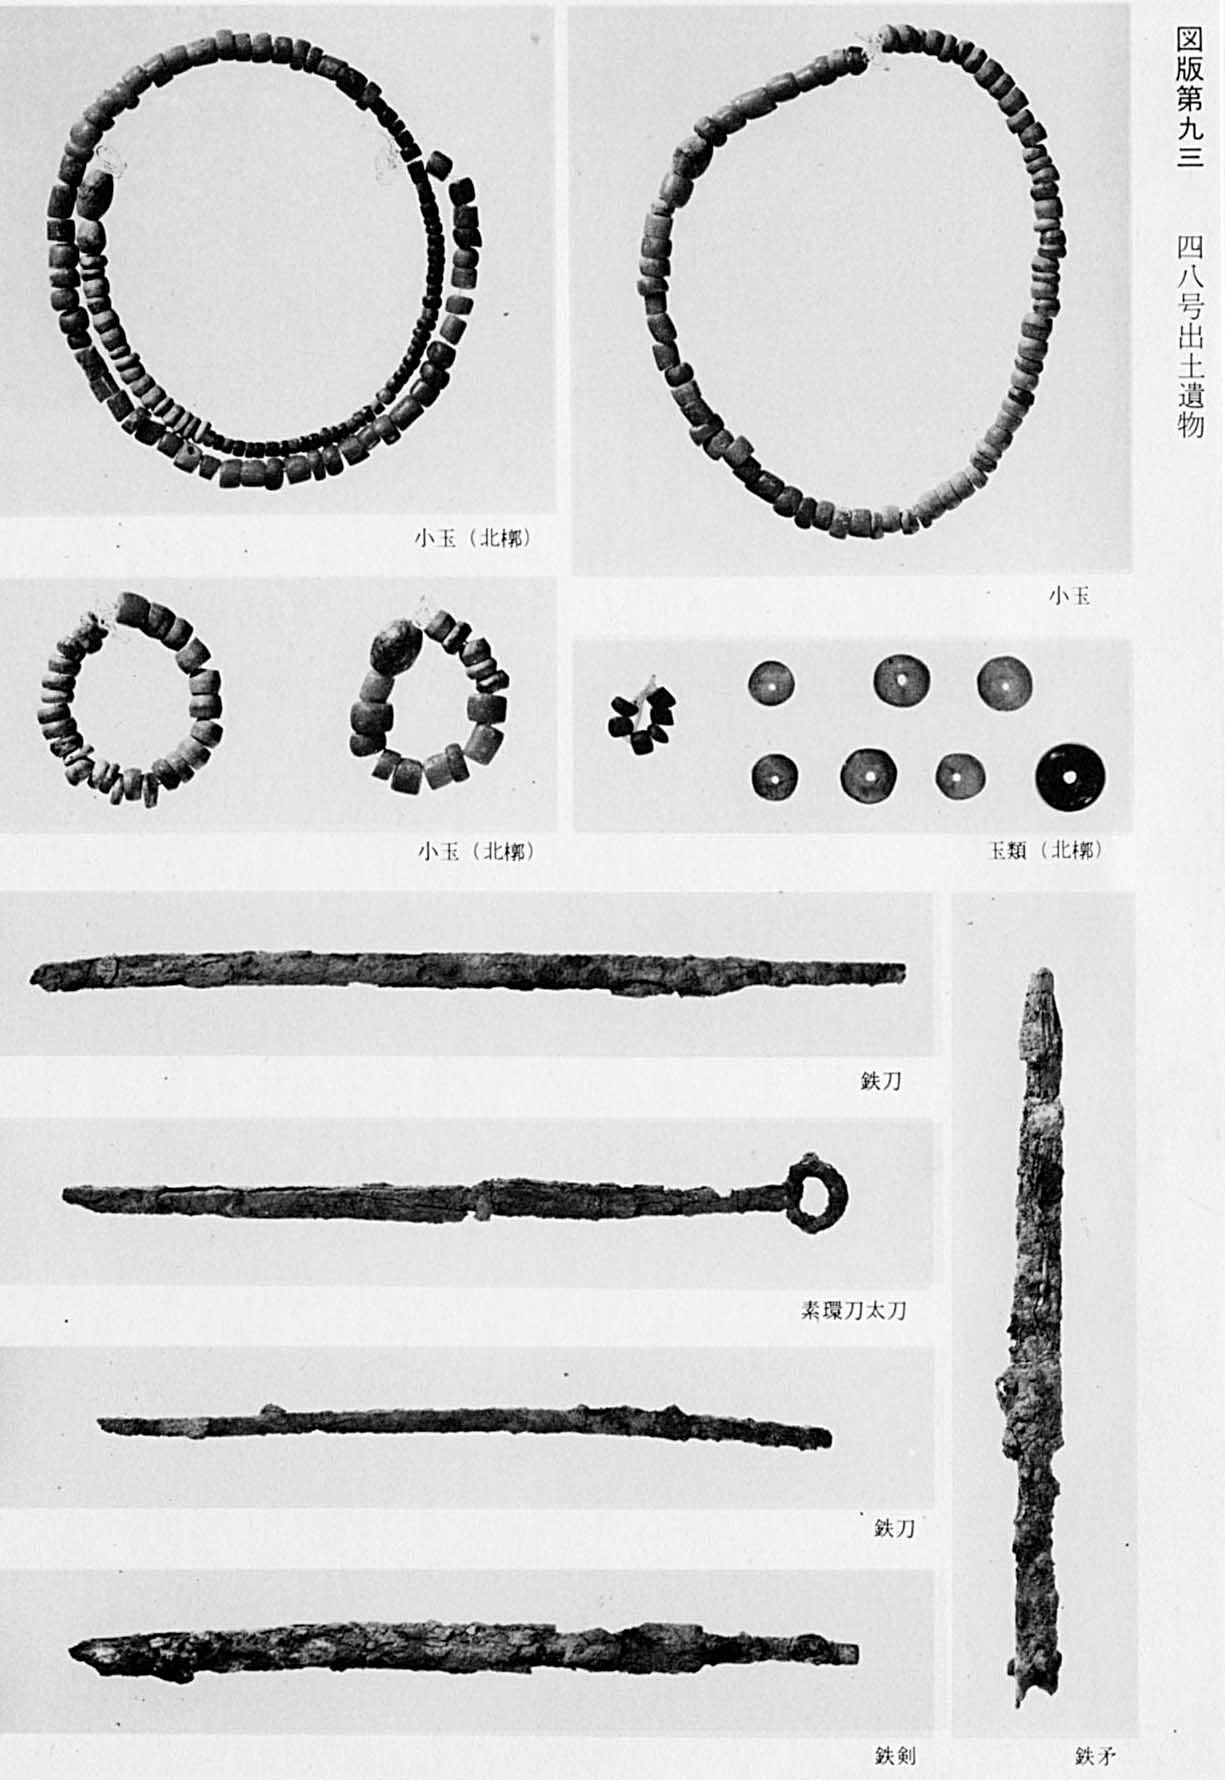 発掘された大小様々な玉で作られた輪っかのアクセサリー4枚の写真と、鉄でできた刀5本それぞれが撮影されたモノクロ写真（図版93 48号出土遺物）